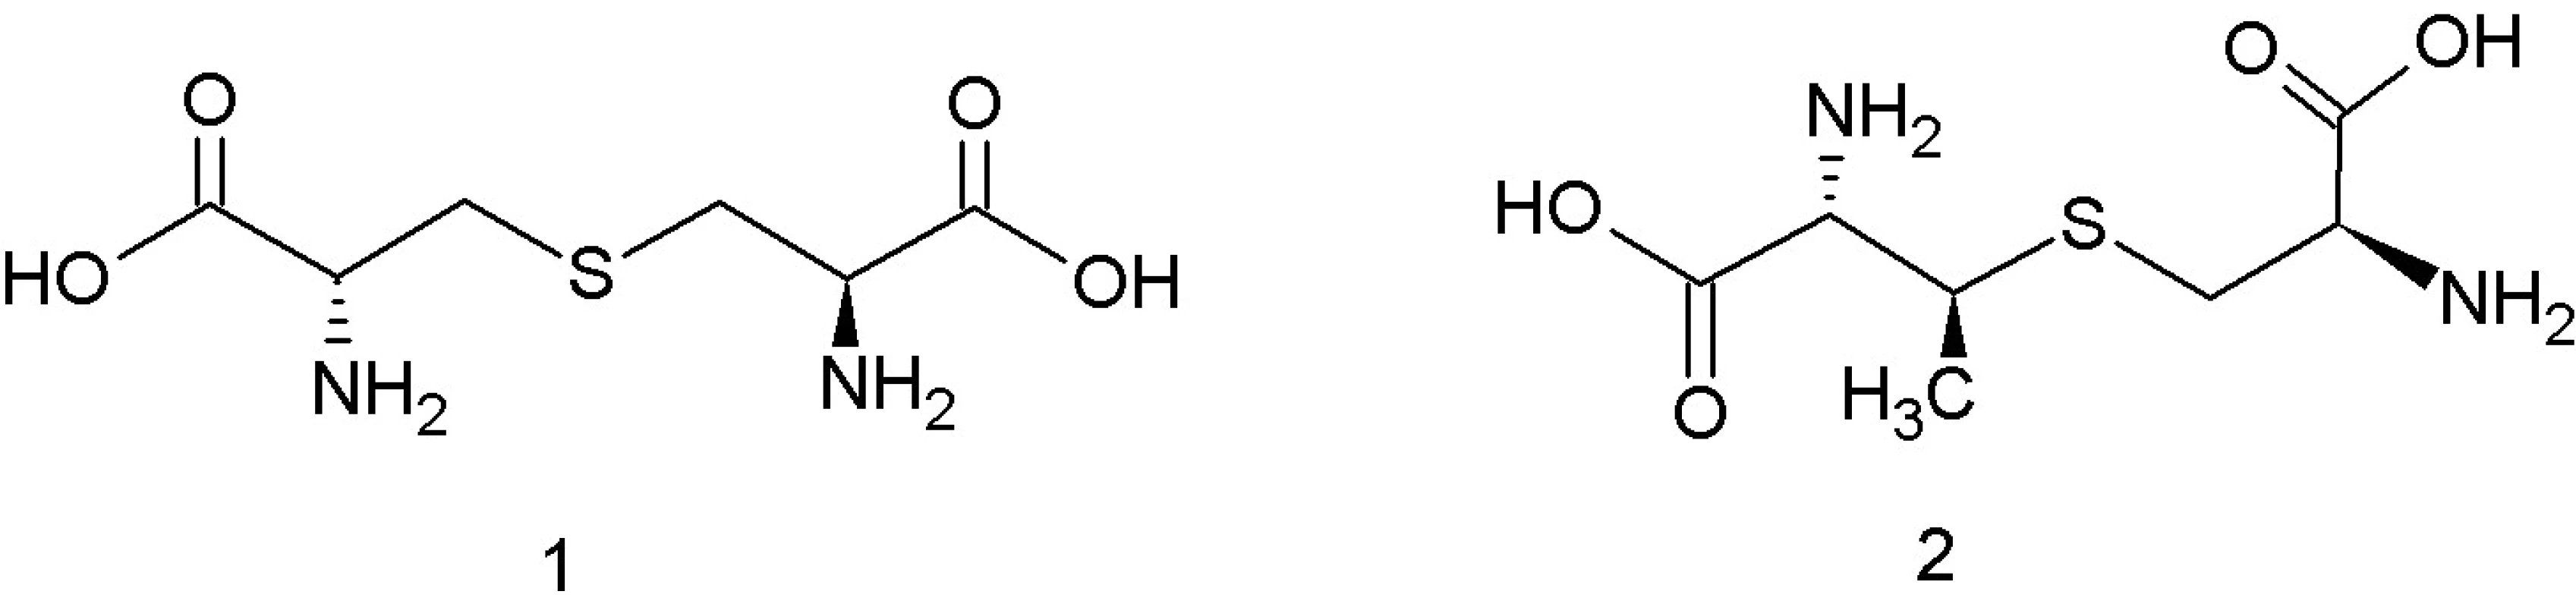 Štruktúra lantionínu – 1, ß-metyllantionínu – 2